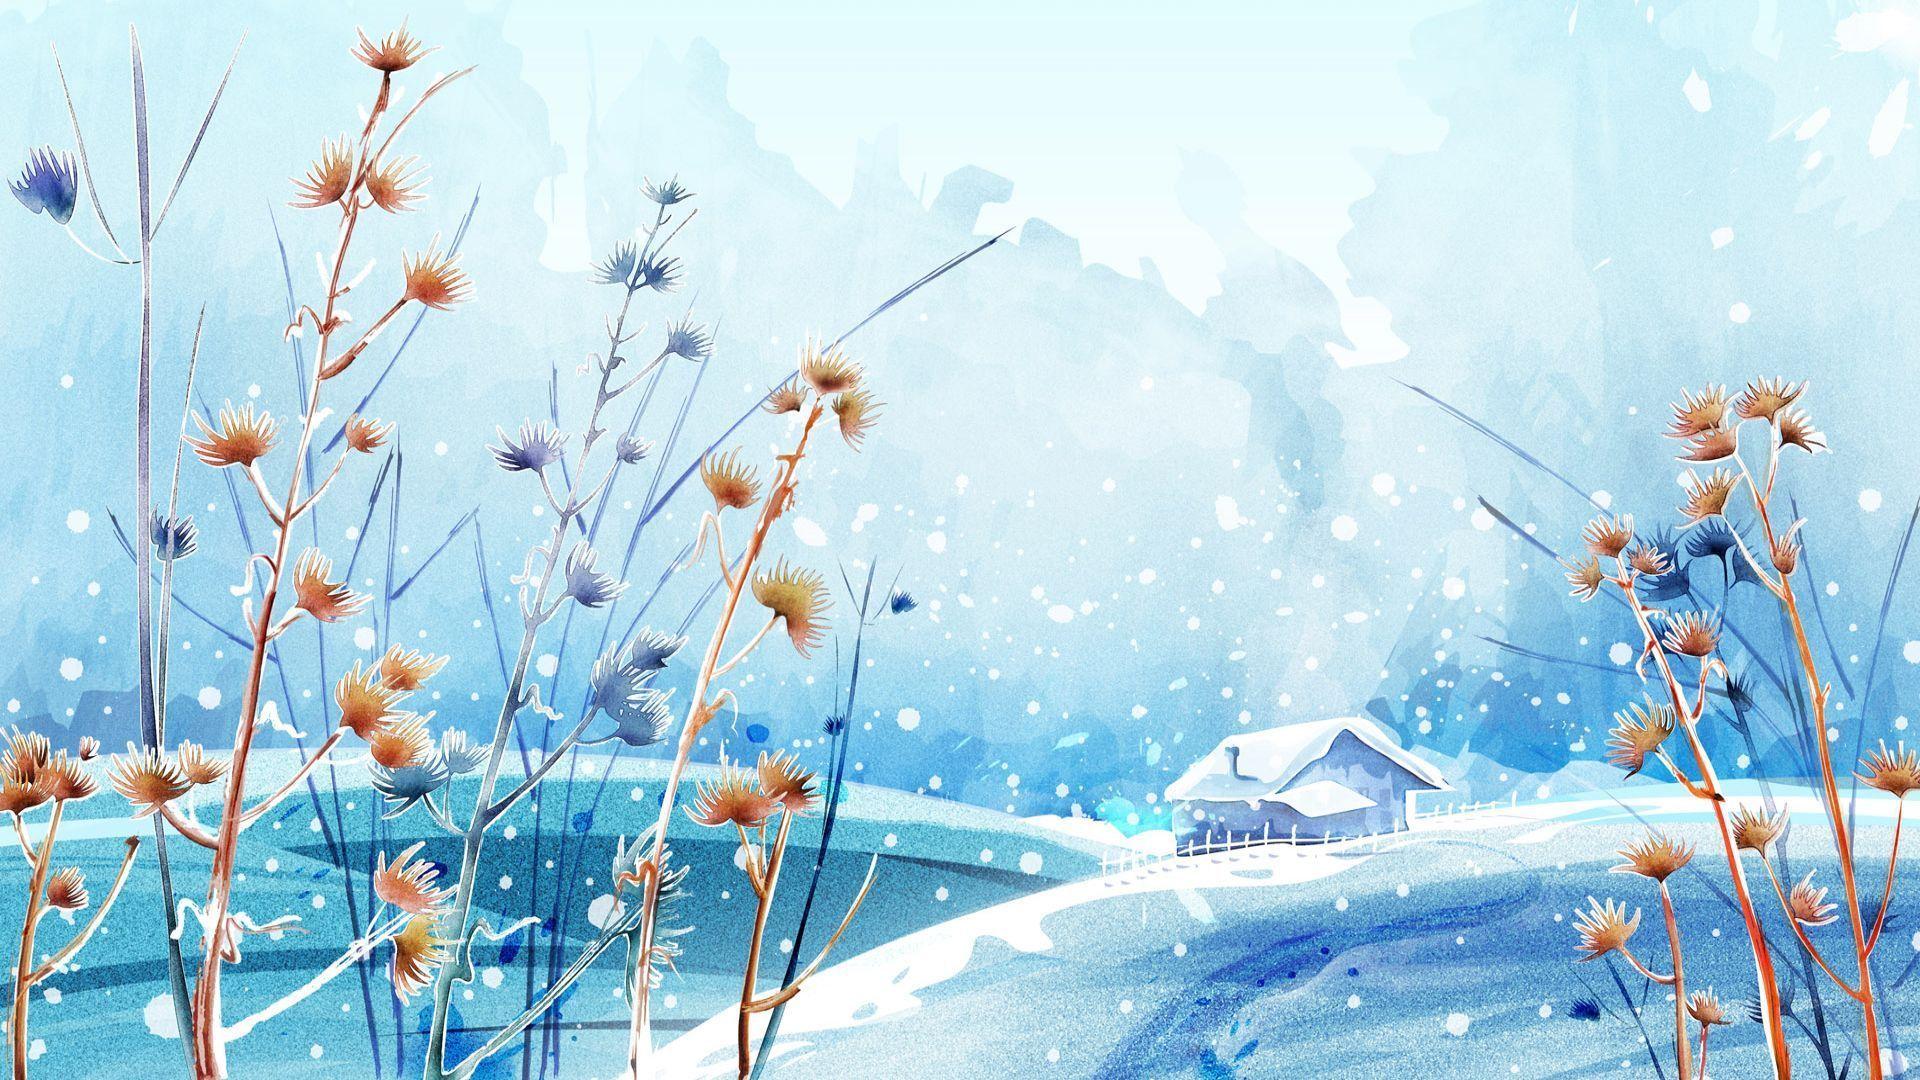 Anime Winter Scenery Wallpaper Wallpaper Background of Your Choice. Winter wallpaper, Winter wallpaper desktop, Landscape wallpaper